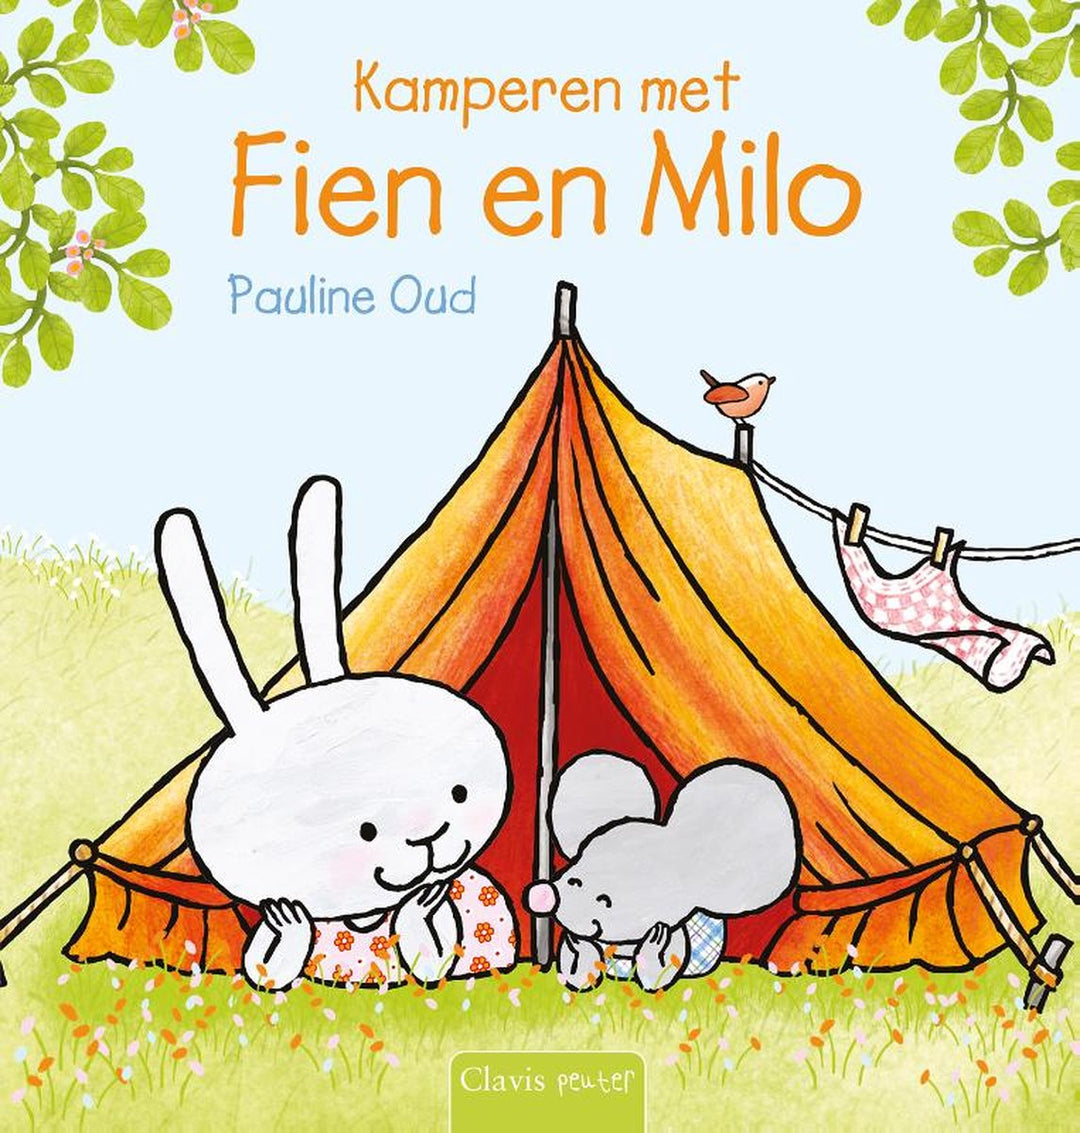 Cover van 'Kamperen Met Fien En Milo' door Clavis, een kinderboek over kamperen met kleurrijke illustraties van Fien en Milo